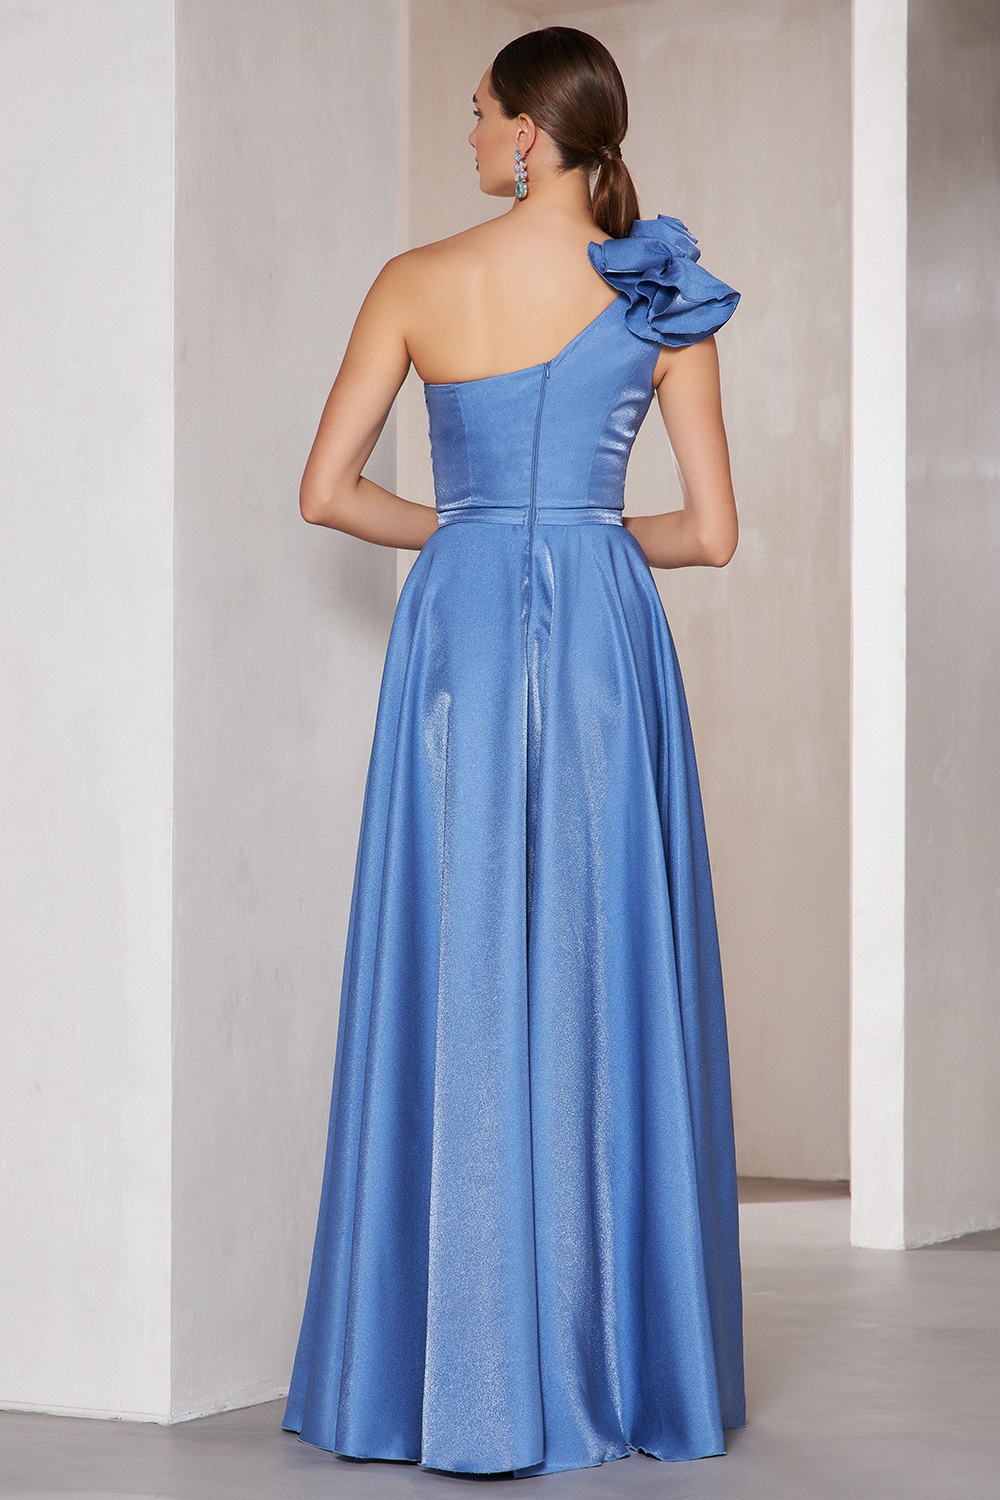 Вечерние платья / One shoulder evening dress with shining fabric